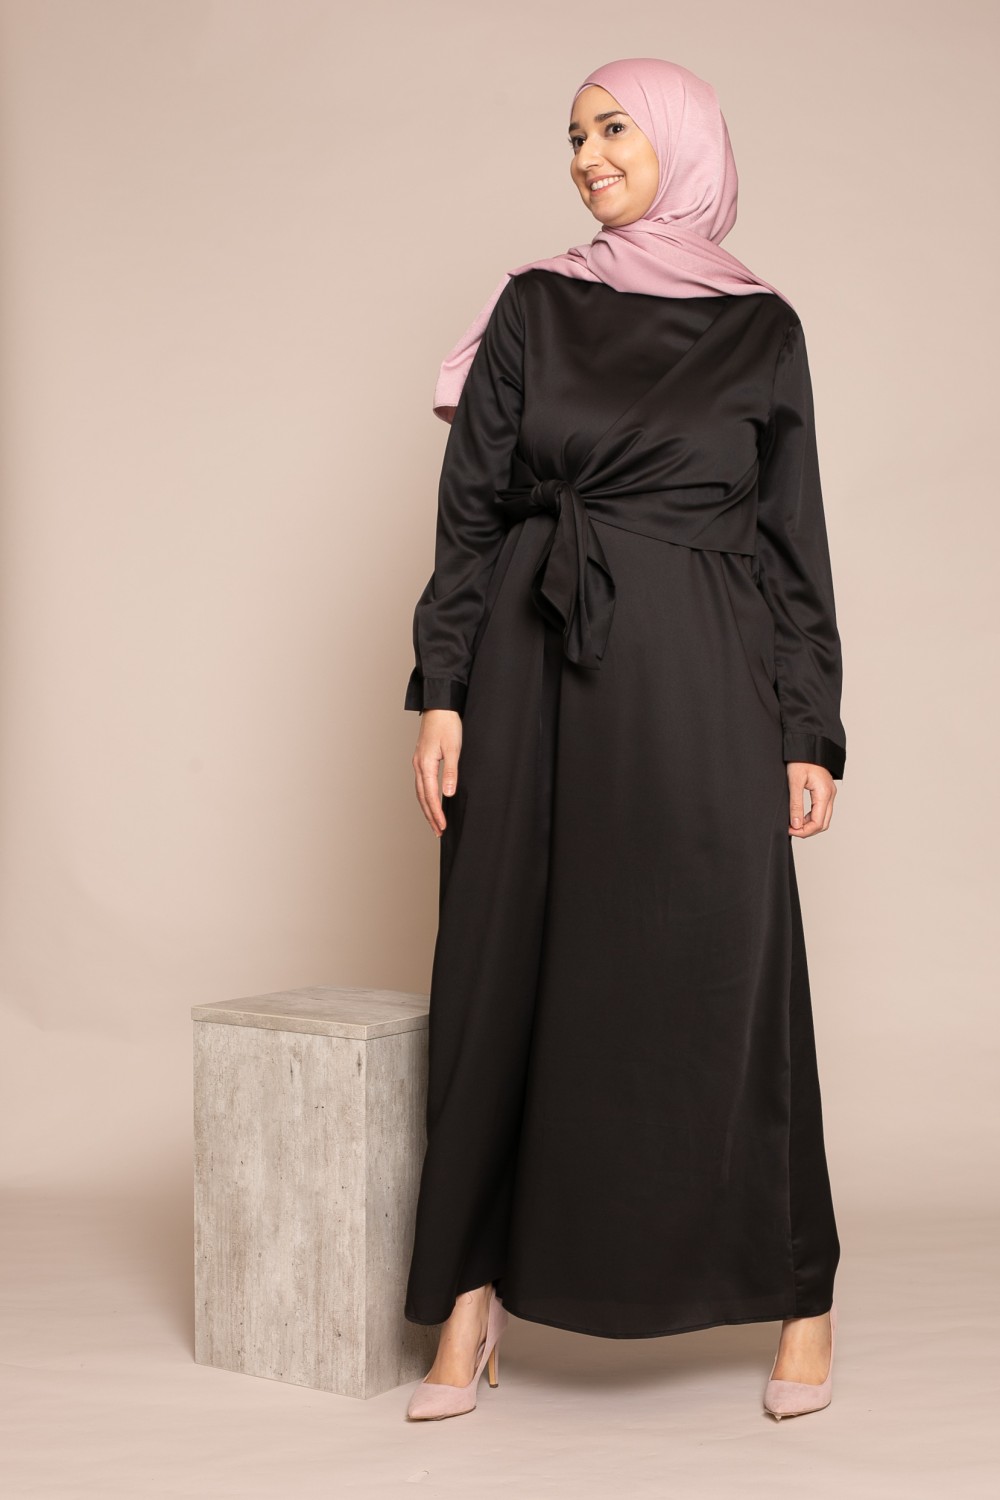 robe longue classe et moderne pour femme musulmane